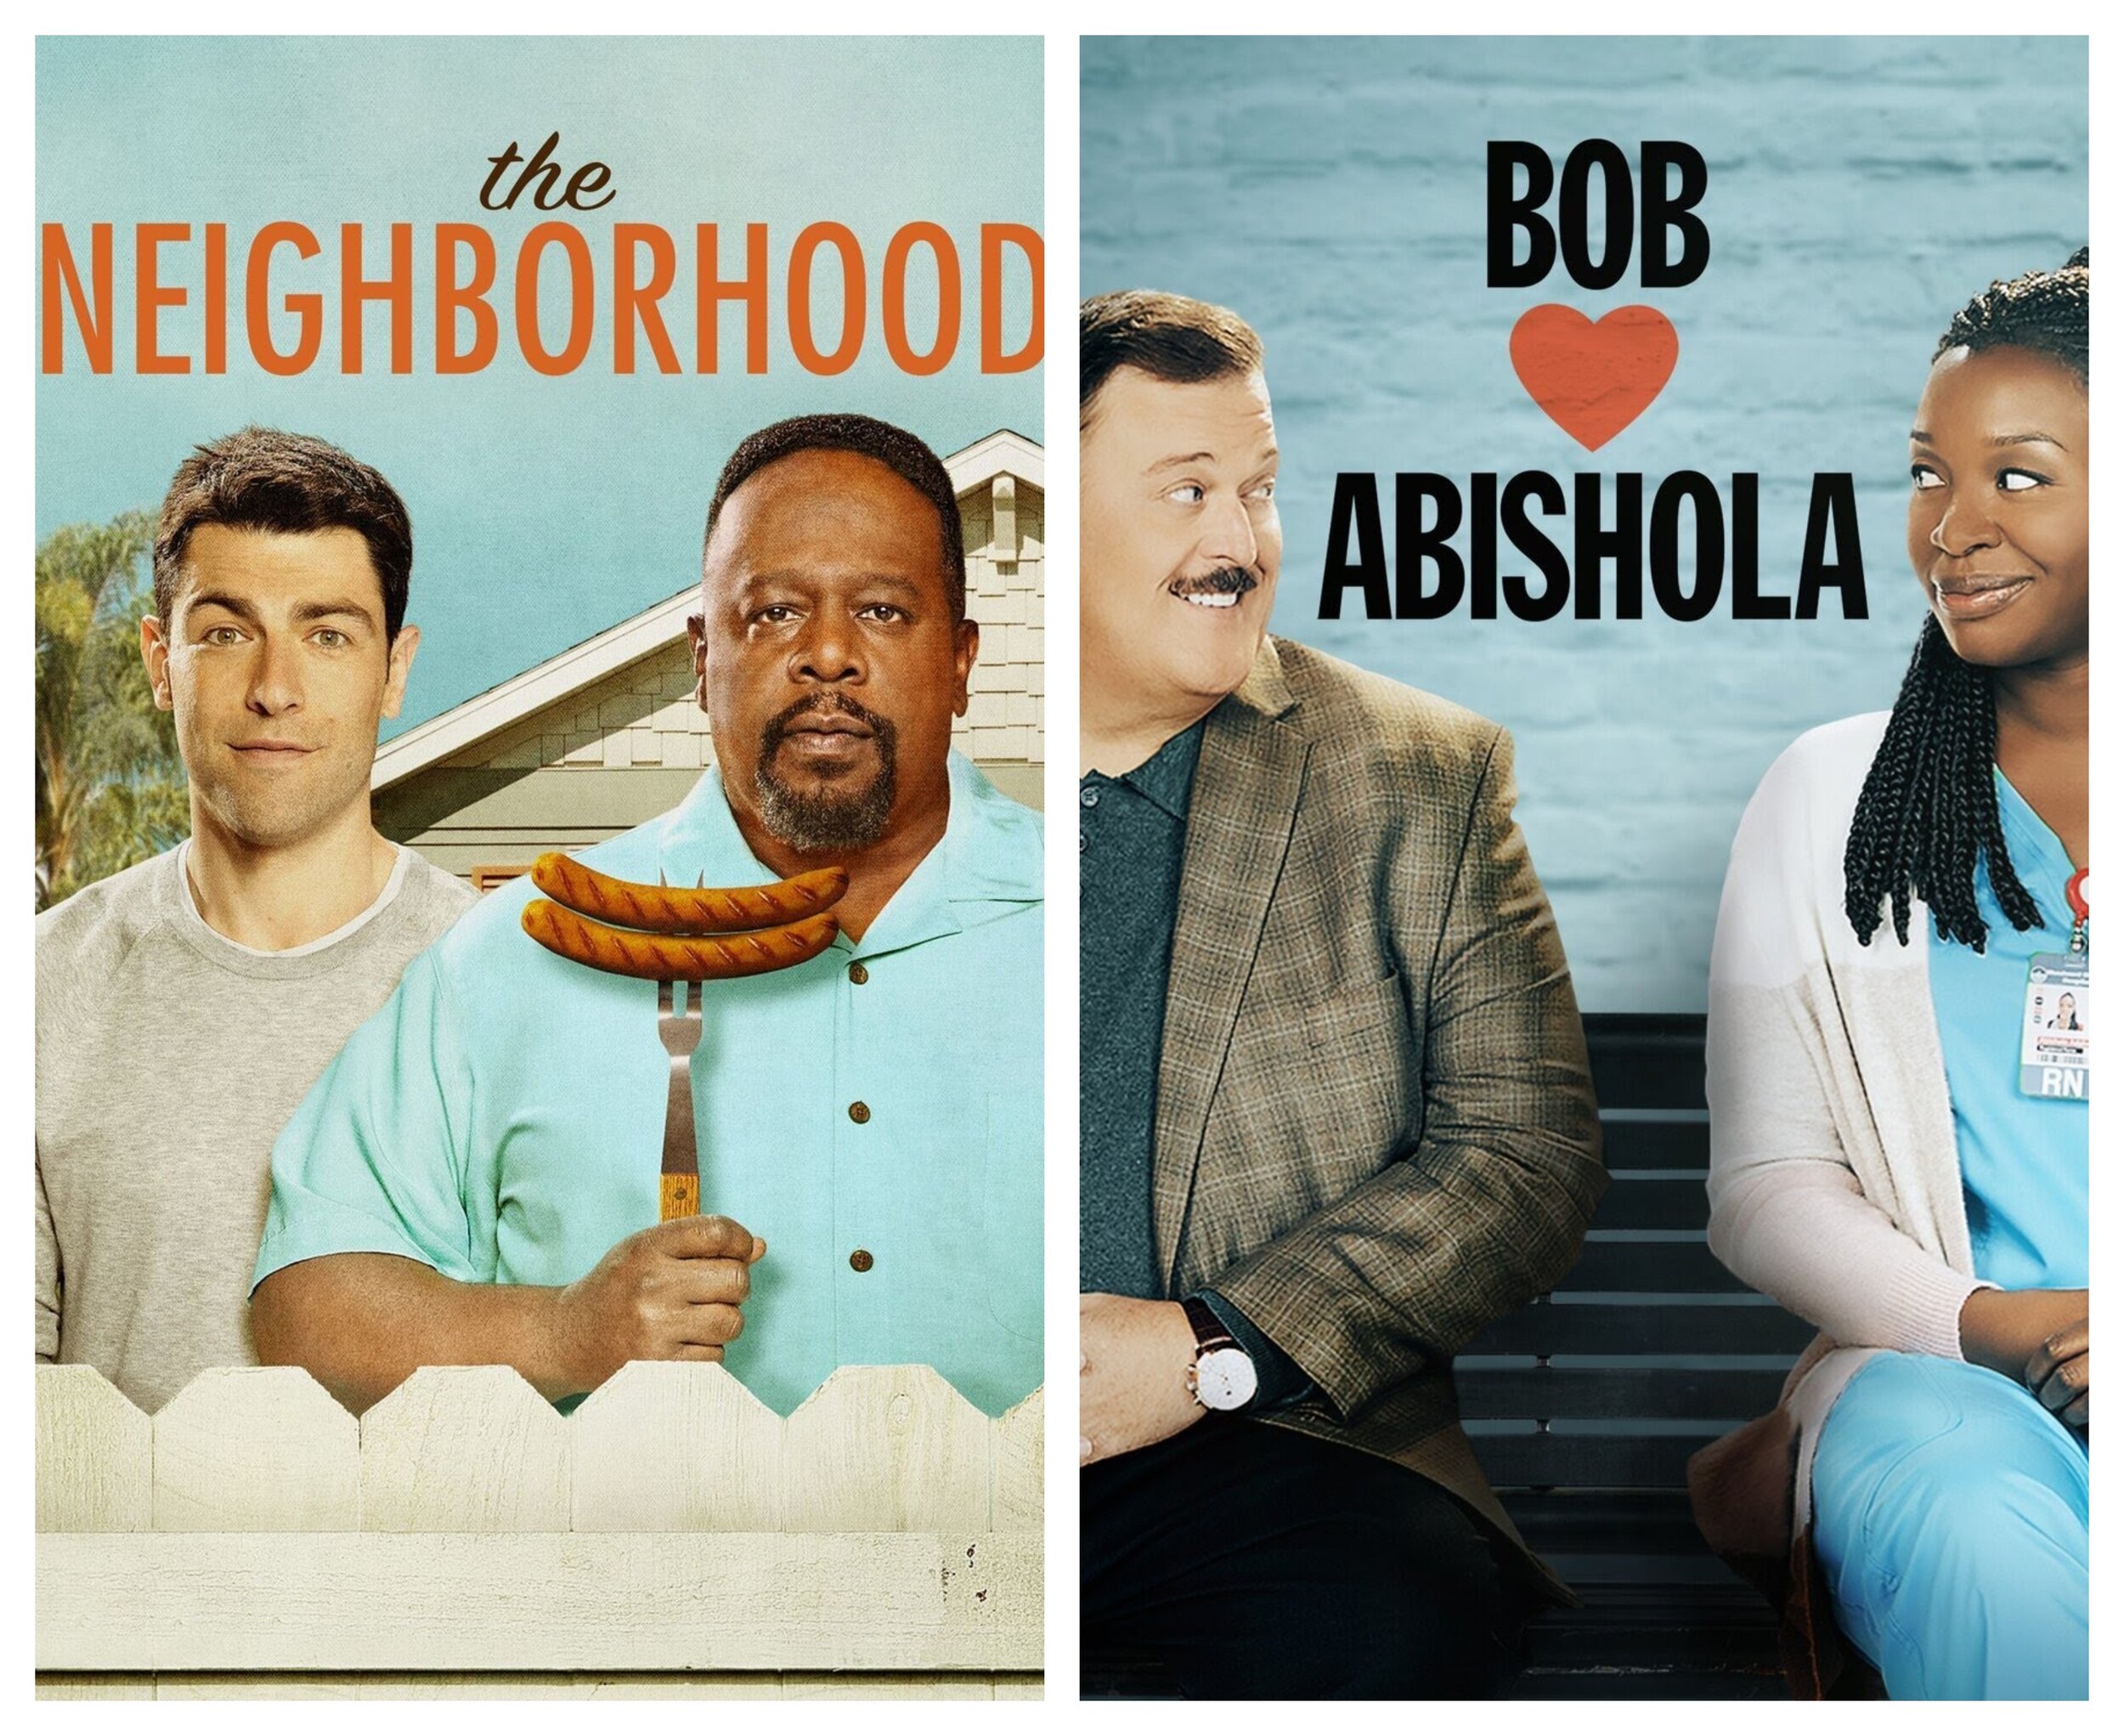 New To TV: The Neighborhood